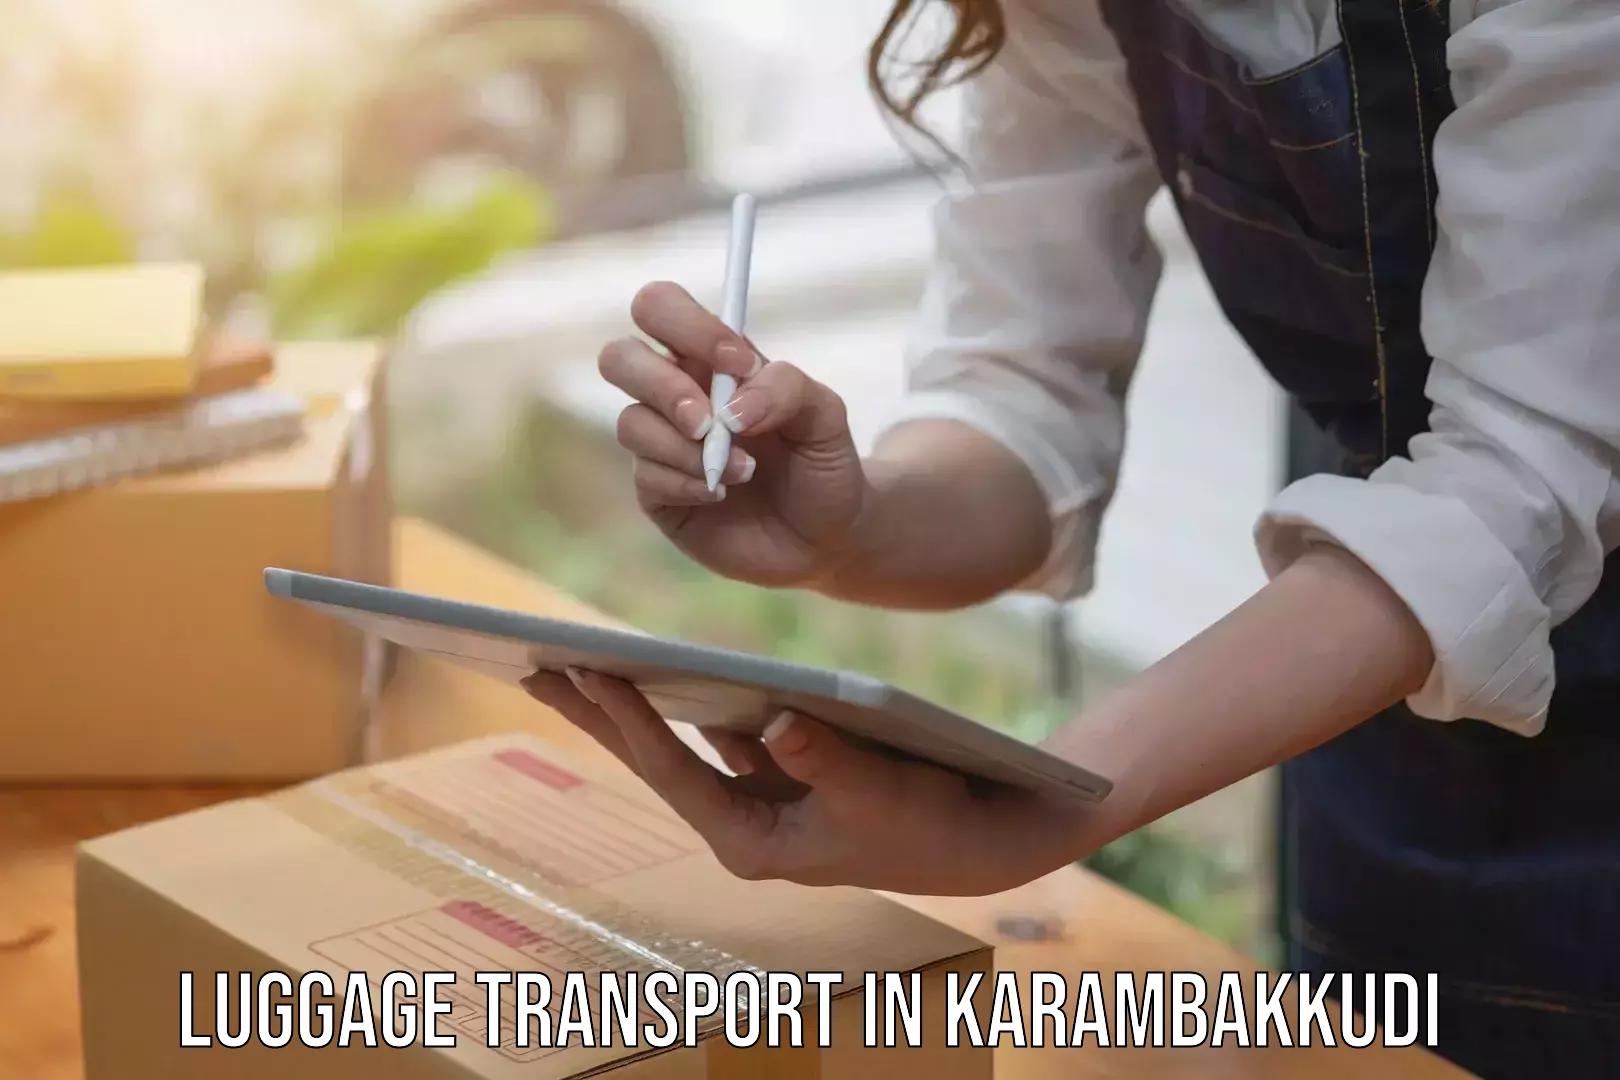 Urban luggage shipping in Karambakkudi